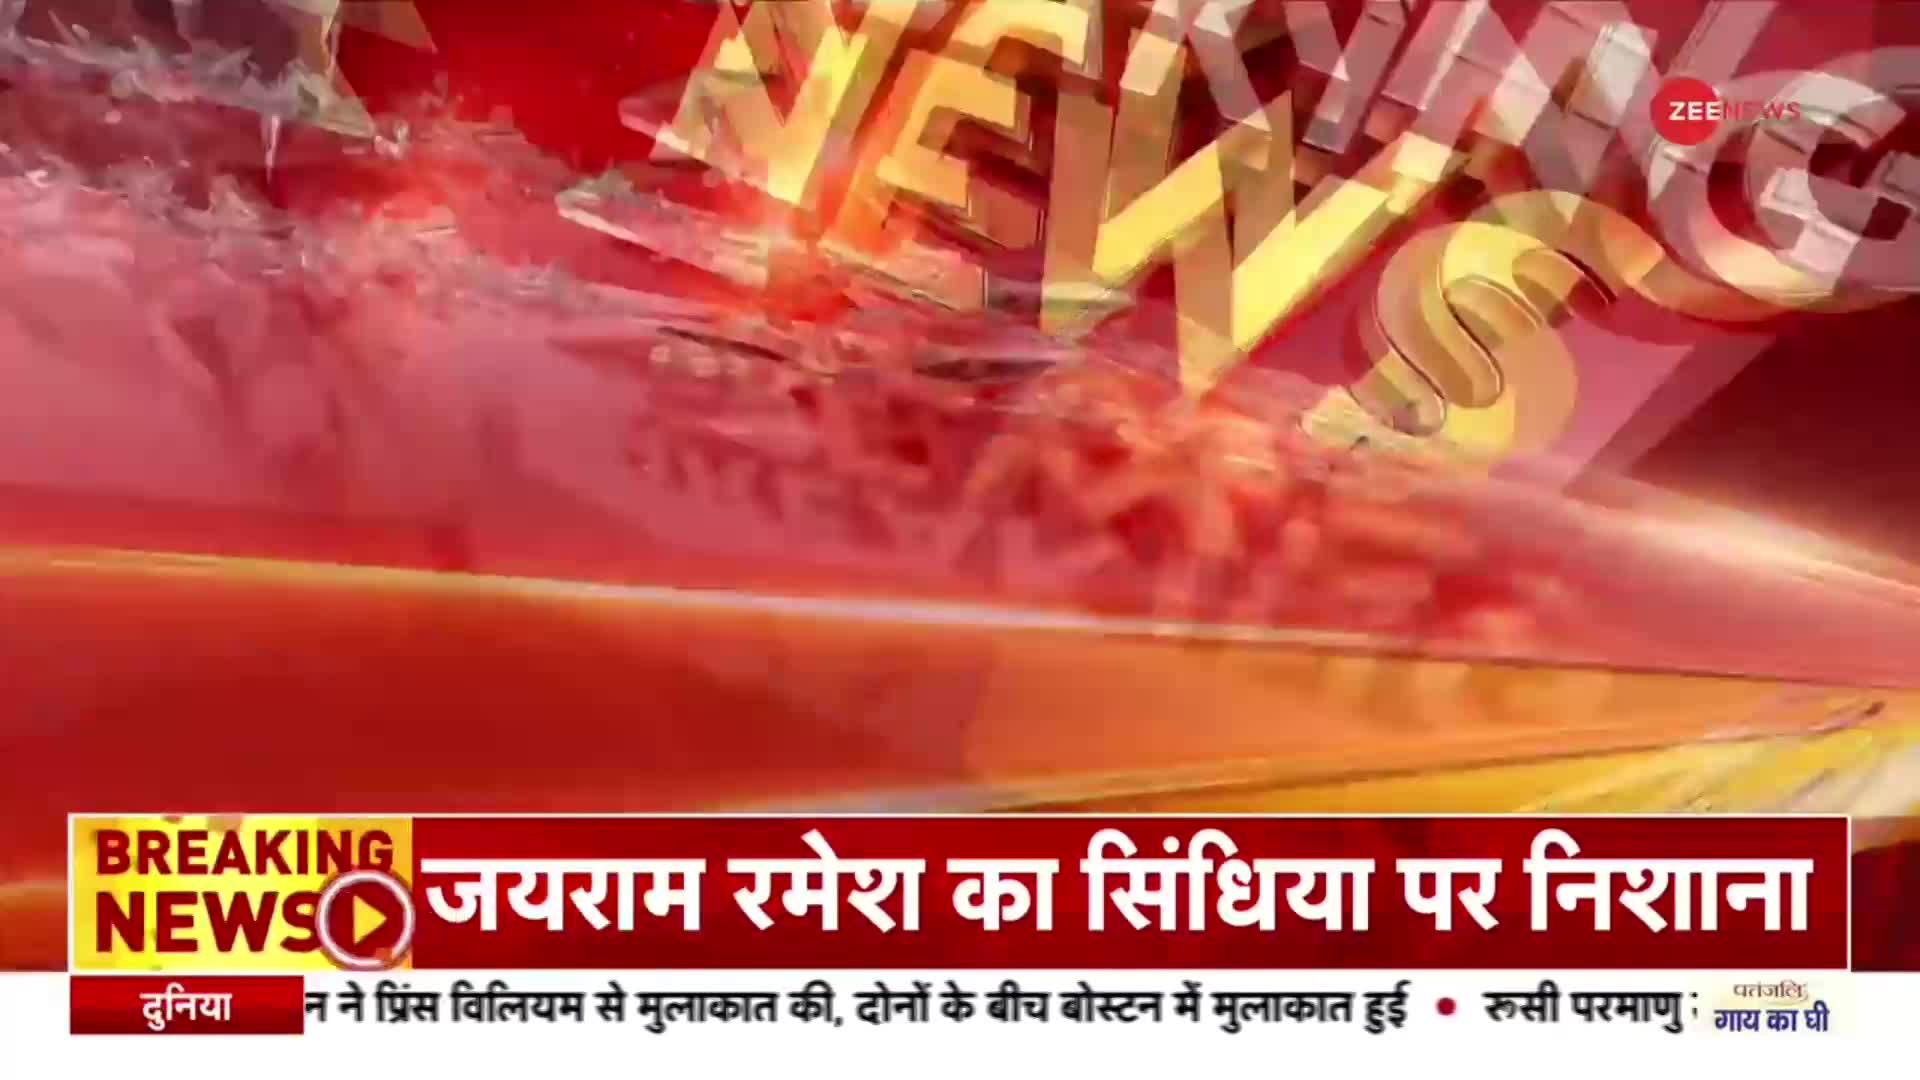 Breaking News: TMC नेता के घर में हुआ बम ब्लास्ट, घटना में दो लोगों की मौत